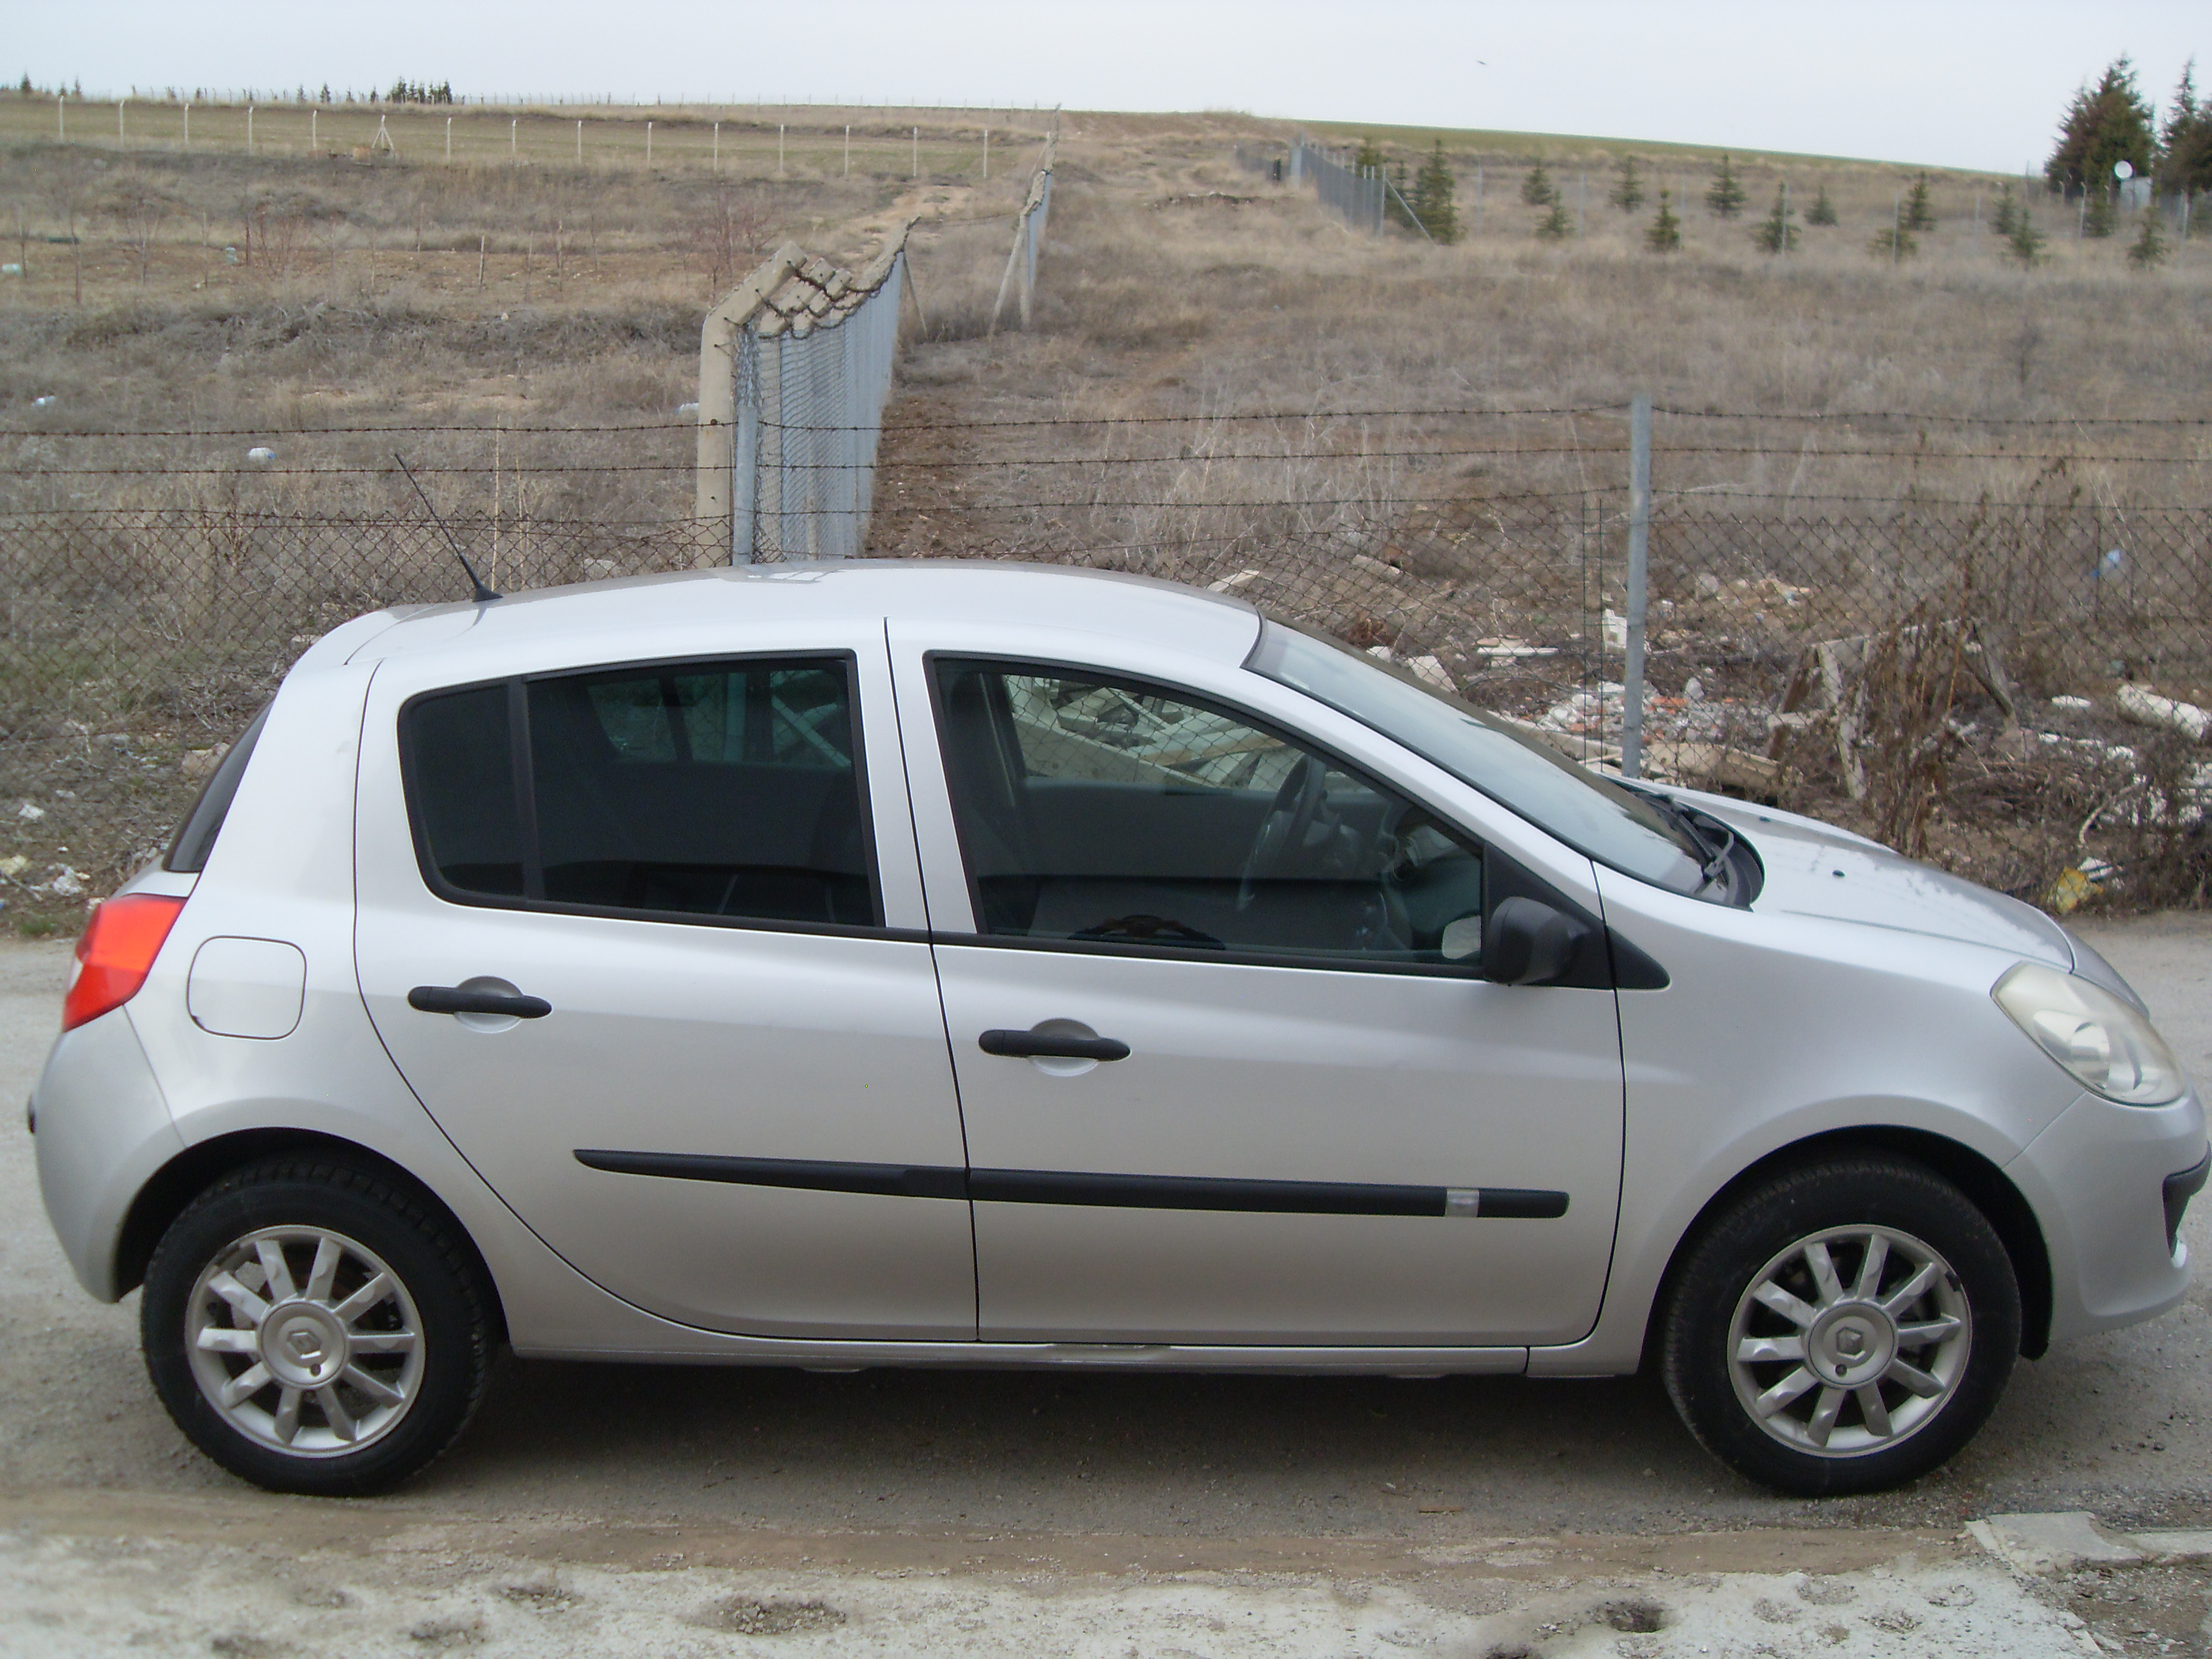 Renault Clio 3 İnceleme